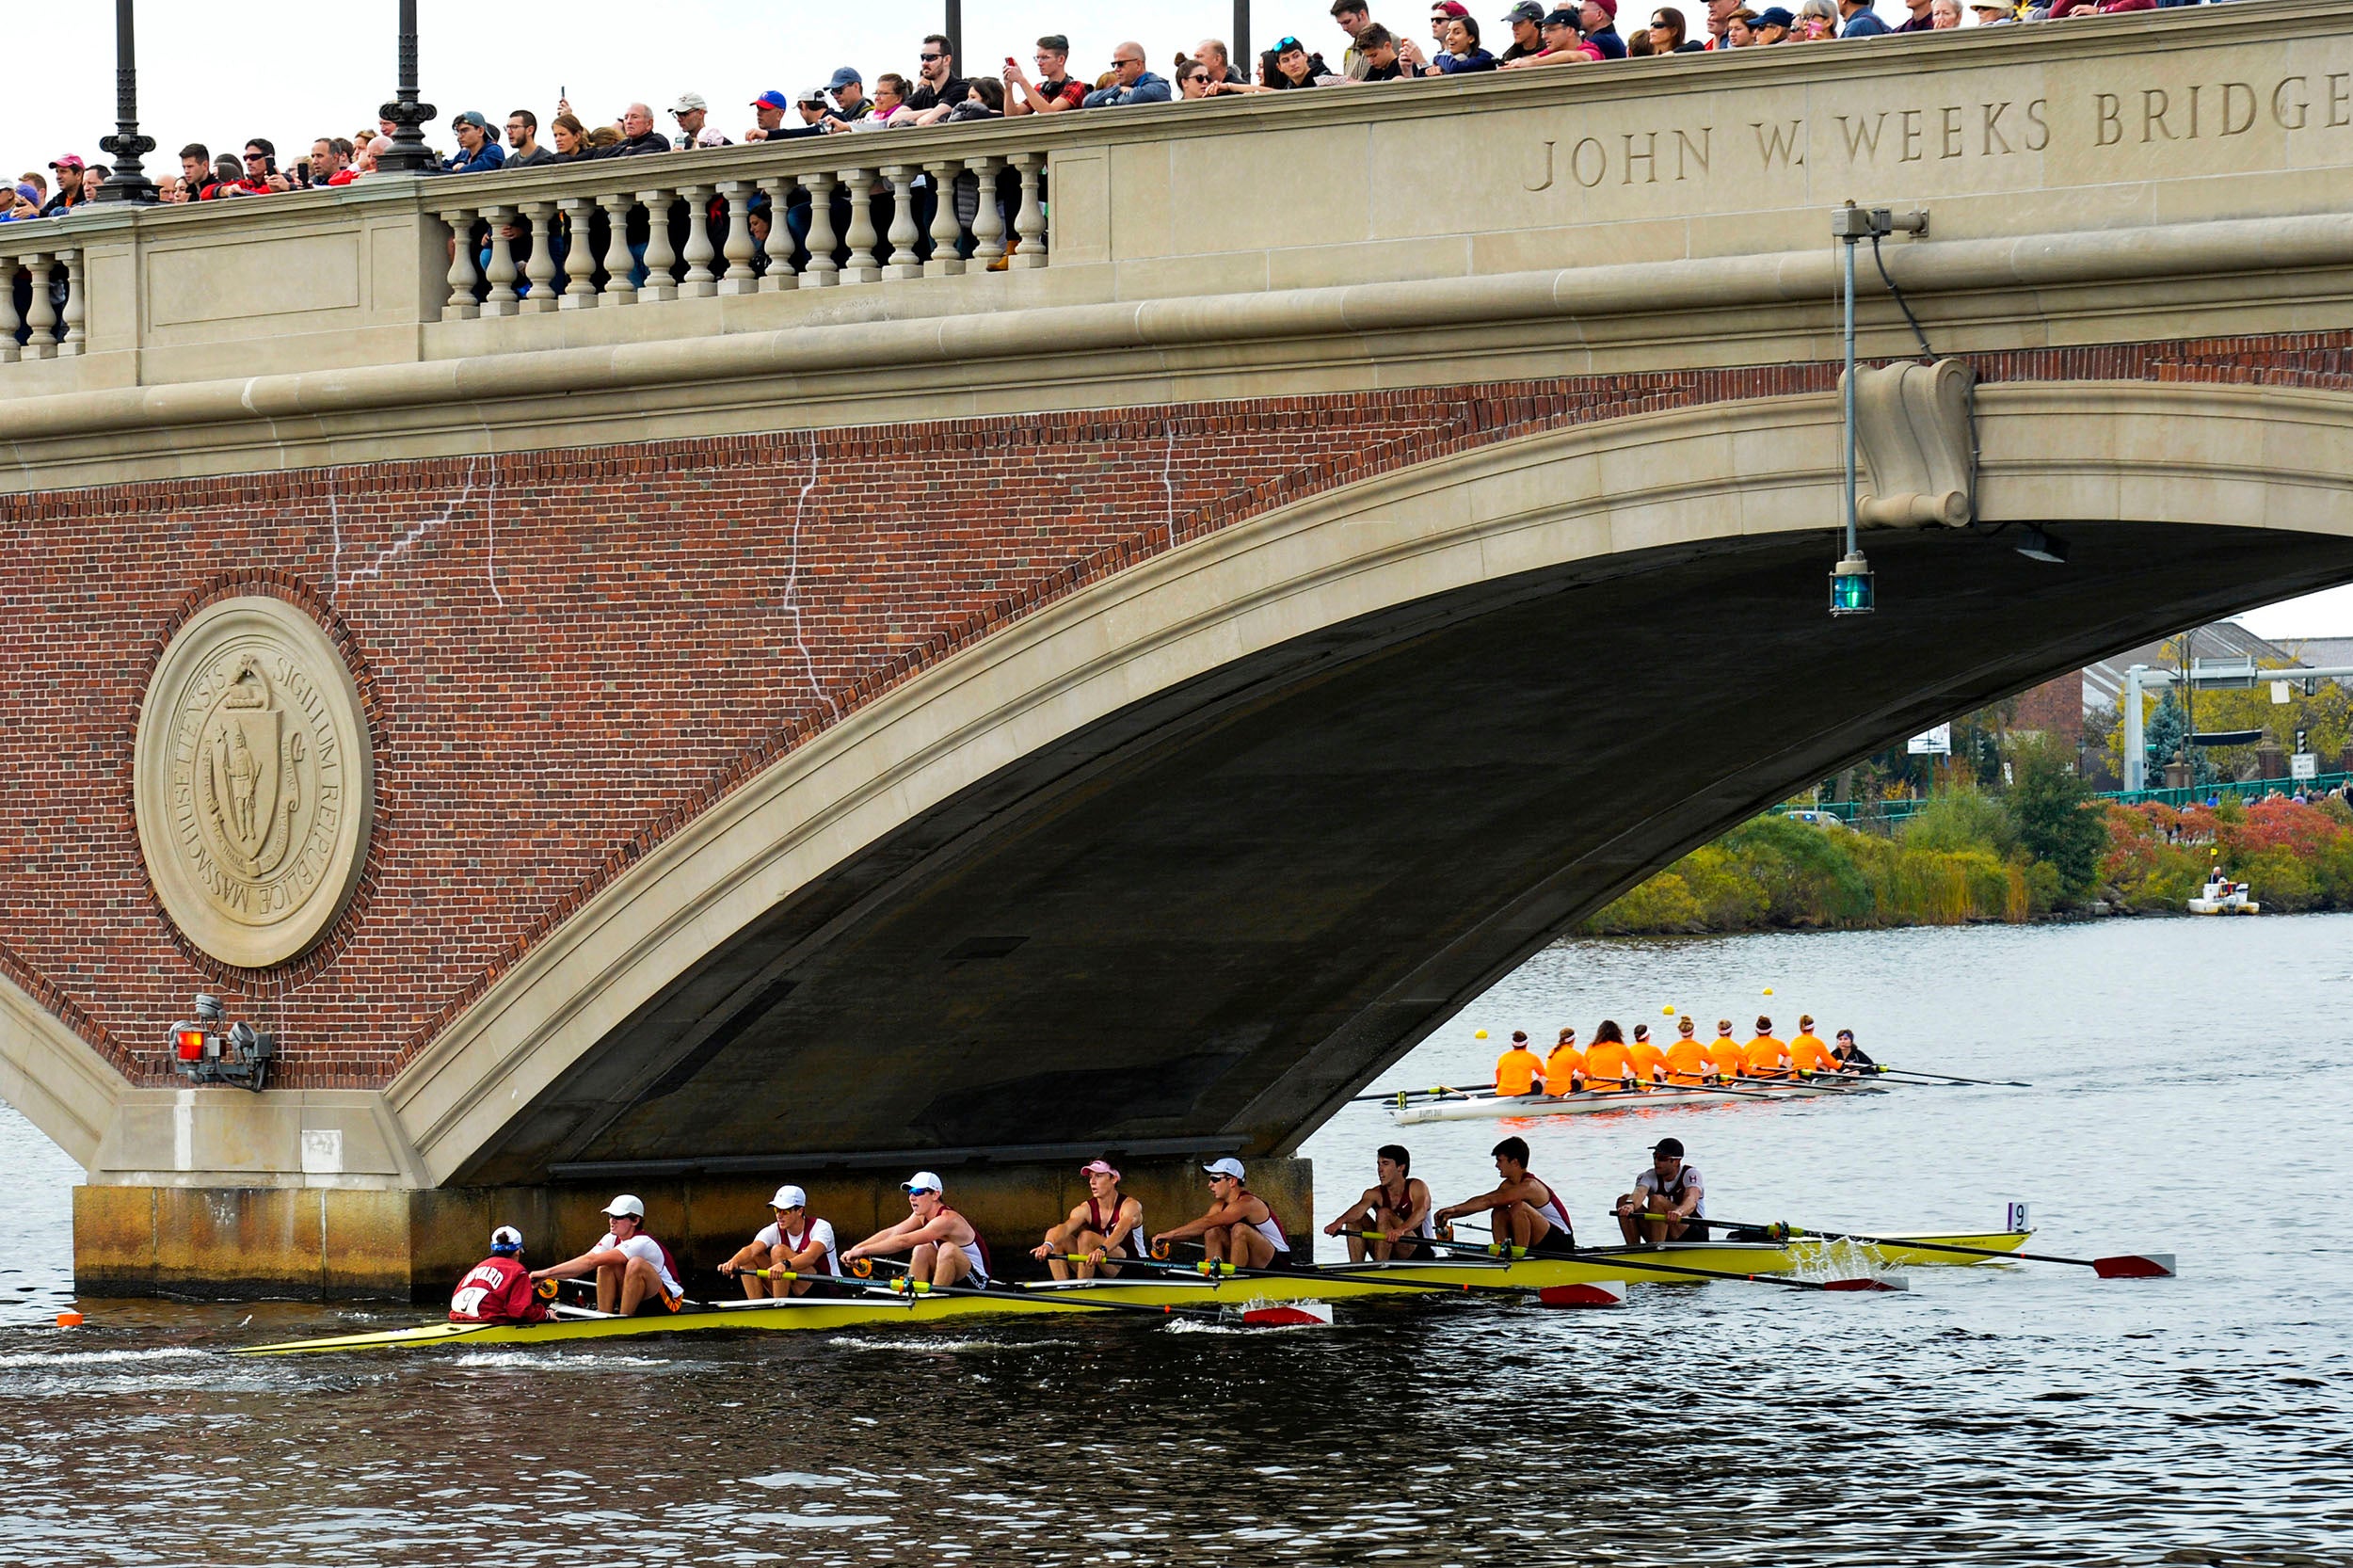 Harvard’s boat in the men’s lightweight eights race passes beneath the Weeks Footbridge.